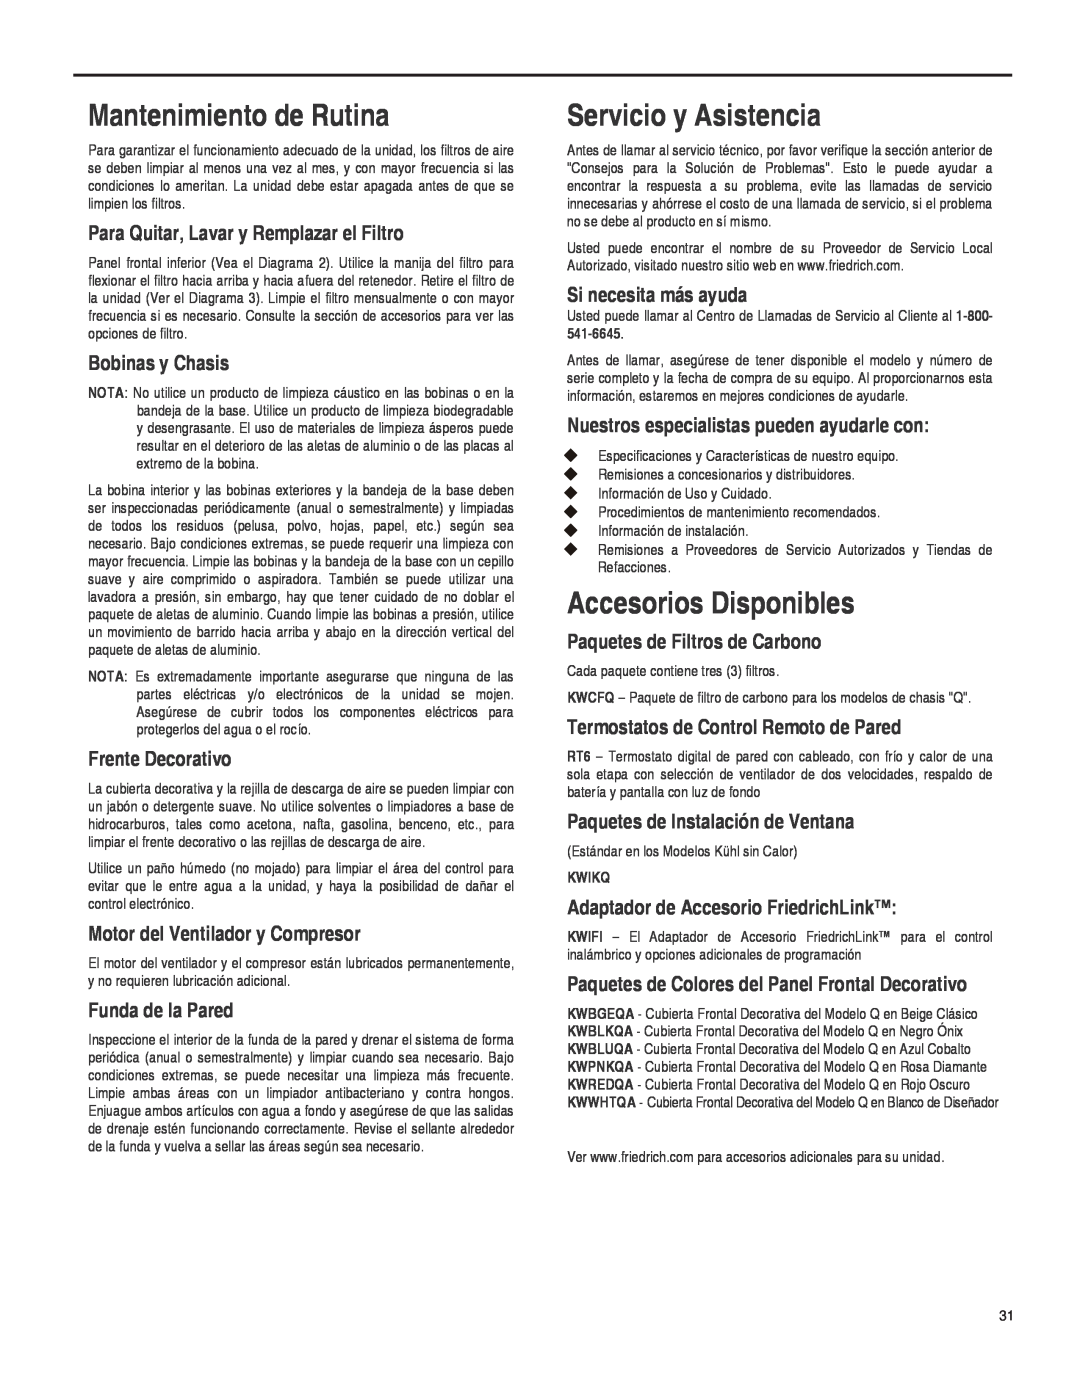 Friedrich SQ08, SQ10, SQ06, SQ05 operation manual Mantenimiento de Rutina, Servicio y Asistencia, Accesorios Disponibles 